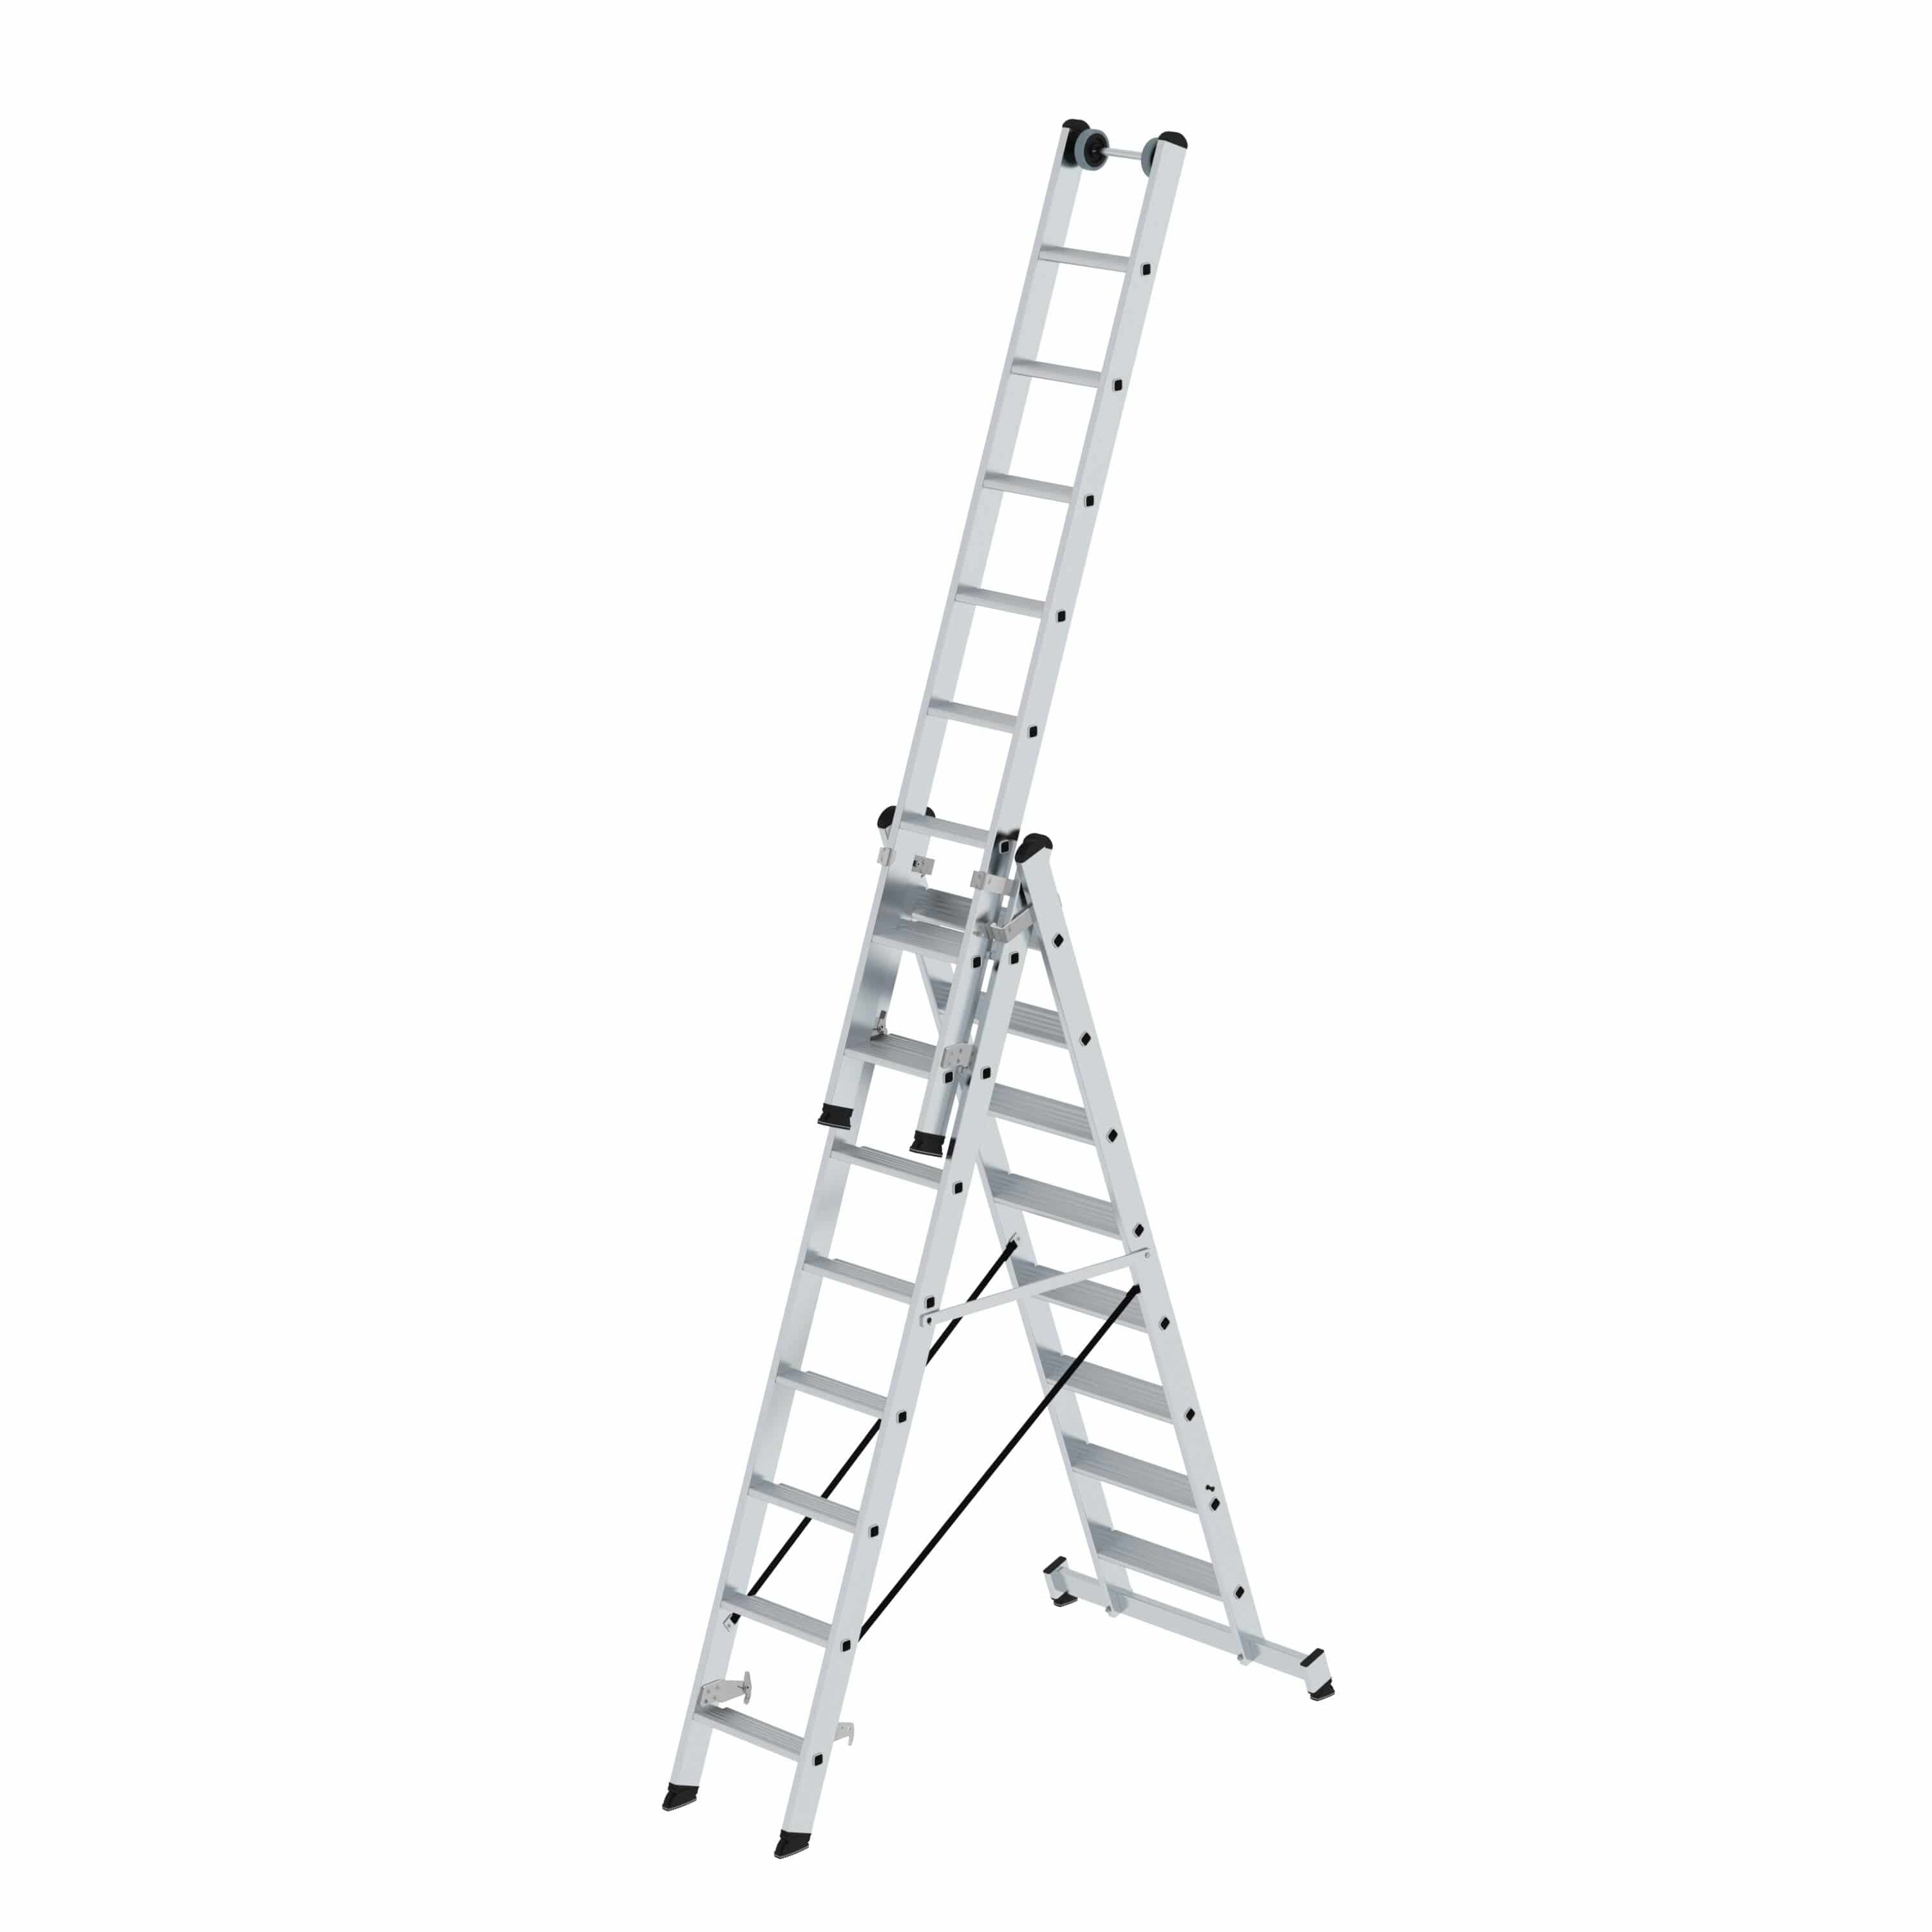 Munk Stufen-Mehrzweckleiter 3-teilig mit nivello®-Traverse 3x8 Stufen